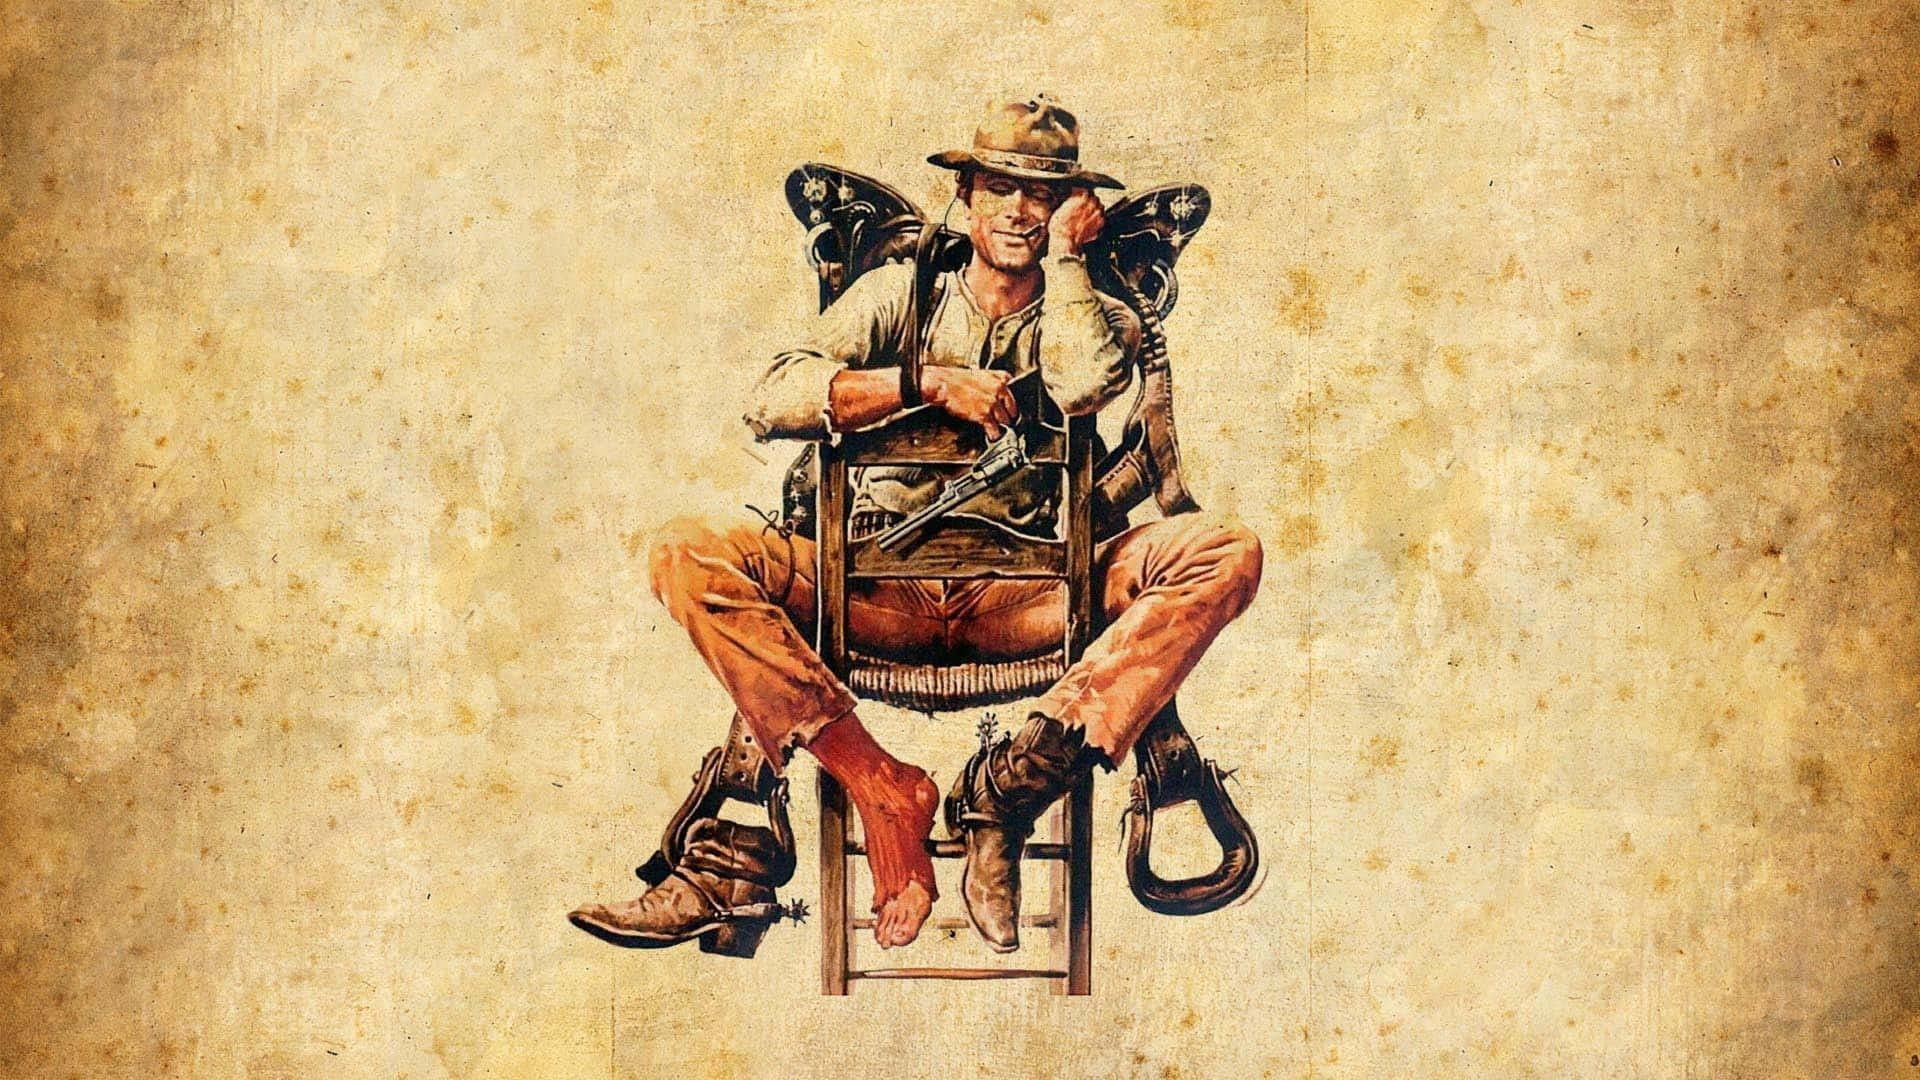 Indiana Jones Wallpapers Wallpaper